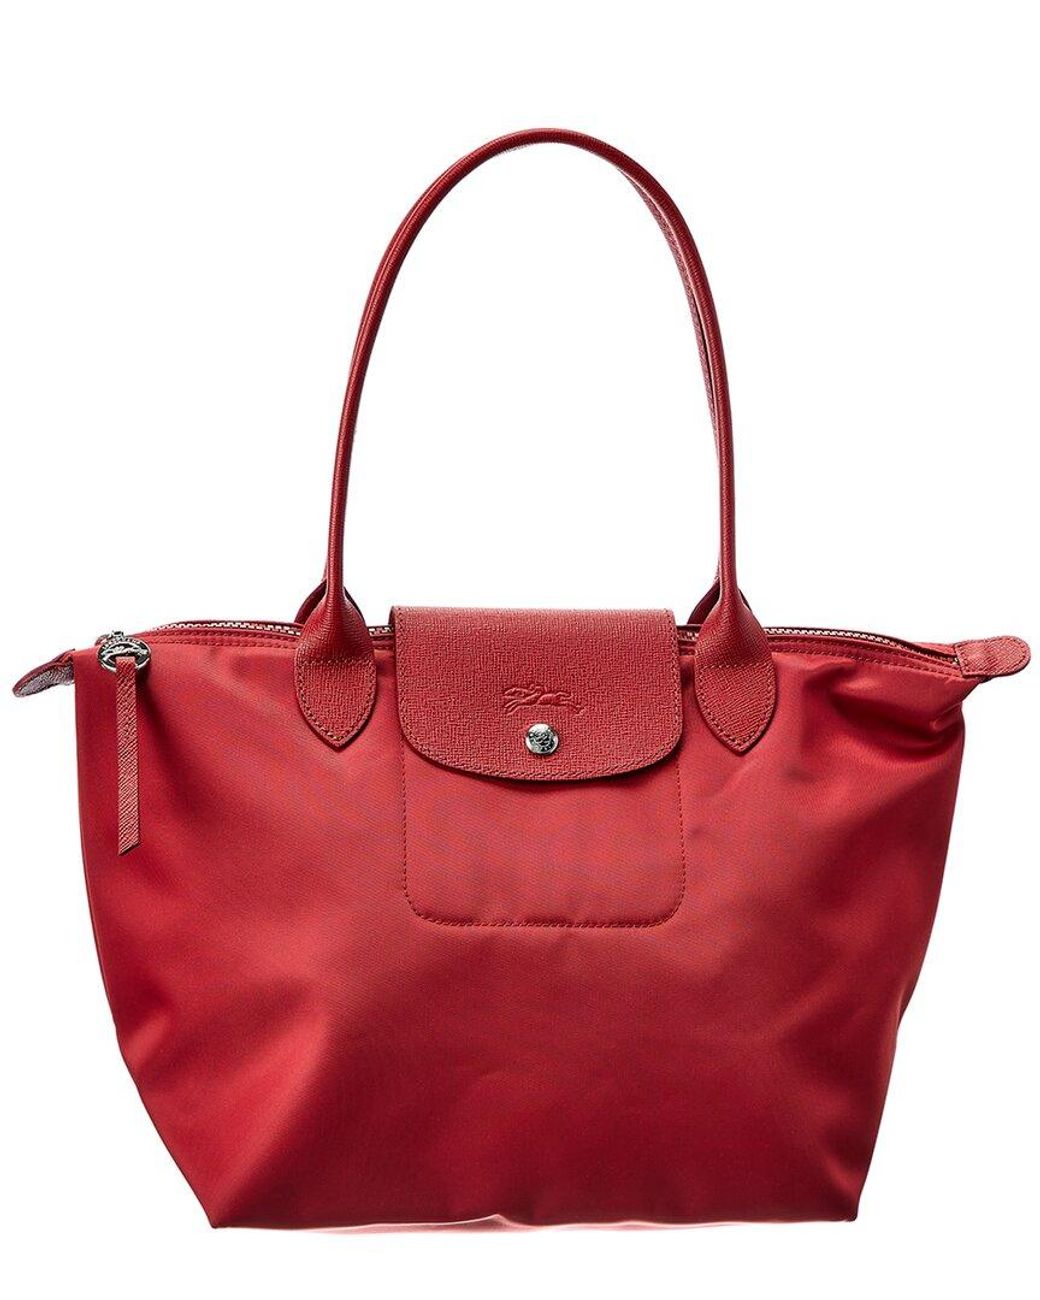 Longchamp+Le+Pliage+Neo+Bucket+Nylon+Bag+Blue for sale online